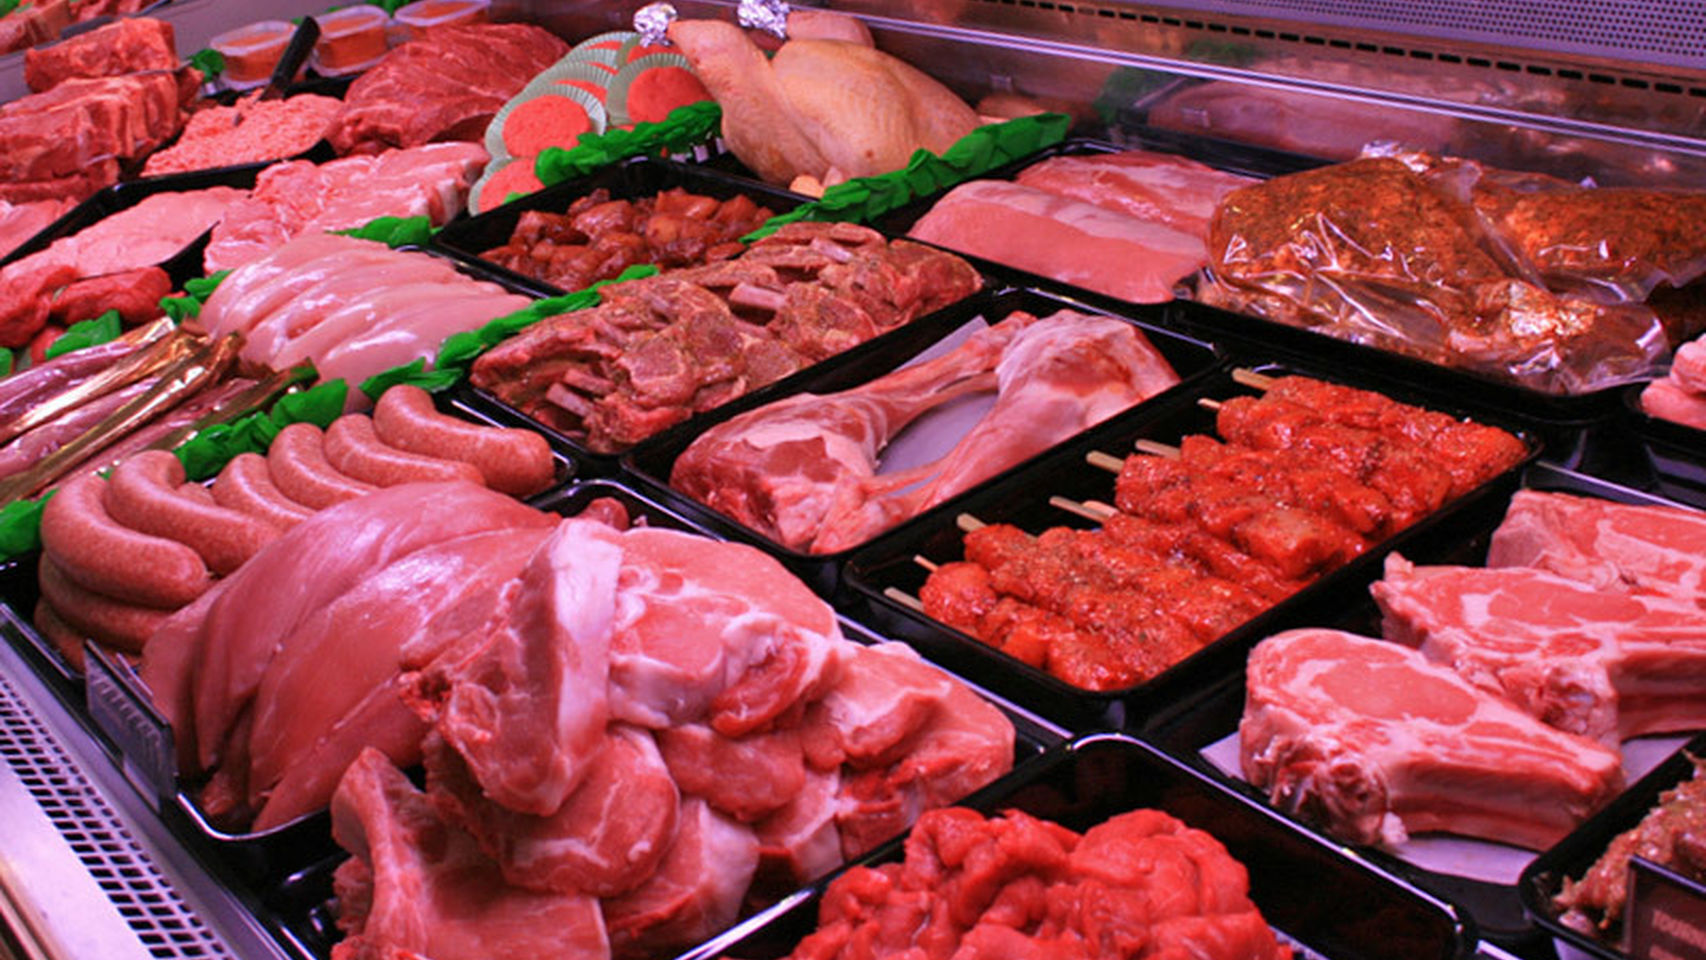 Comer carne roja y carnes procesadas acortaría la vida, según estudio